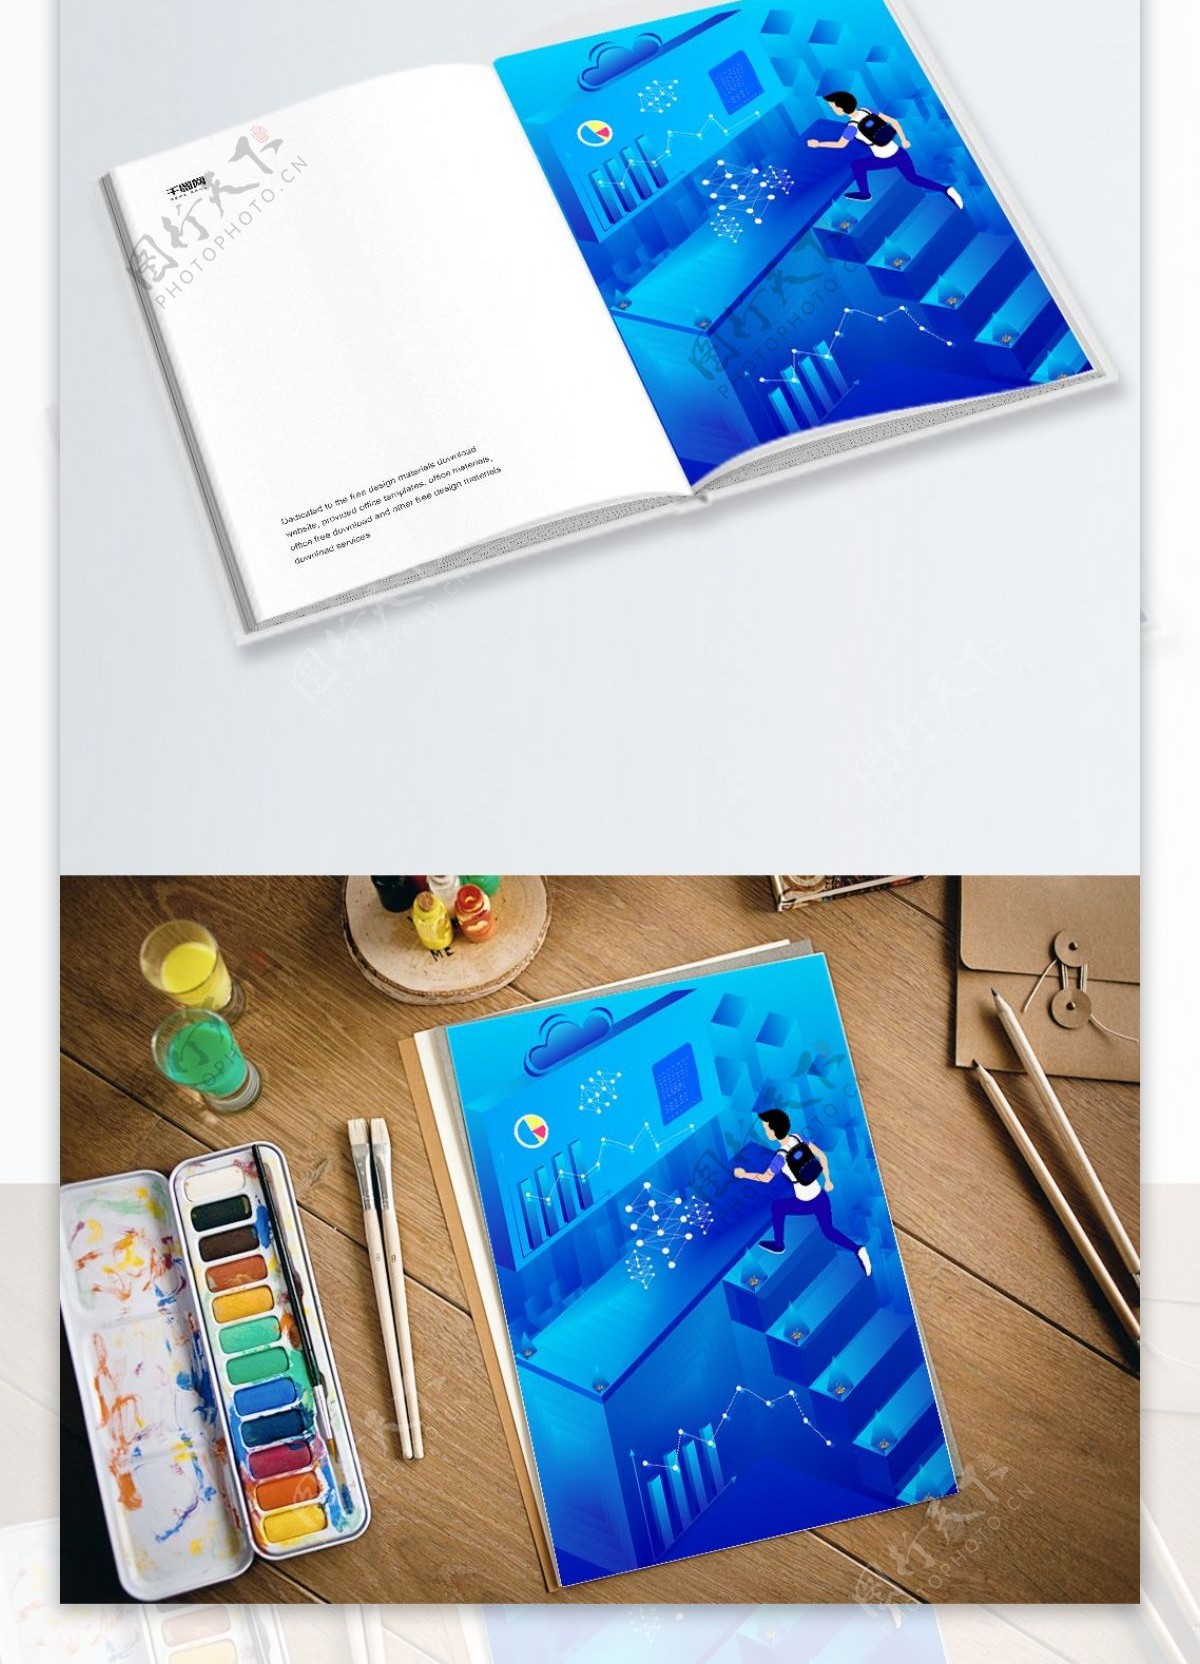 2.5D蓝色科技人物建筑图表商业插画